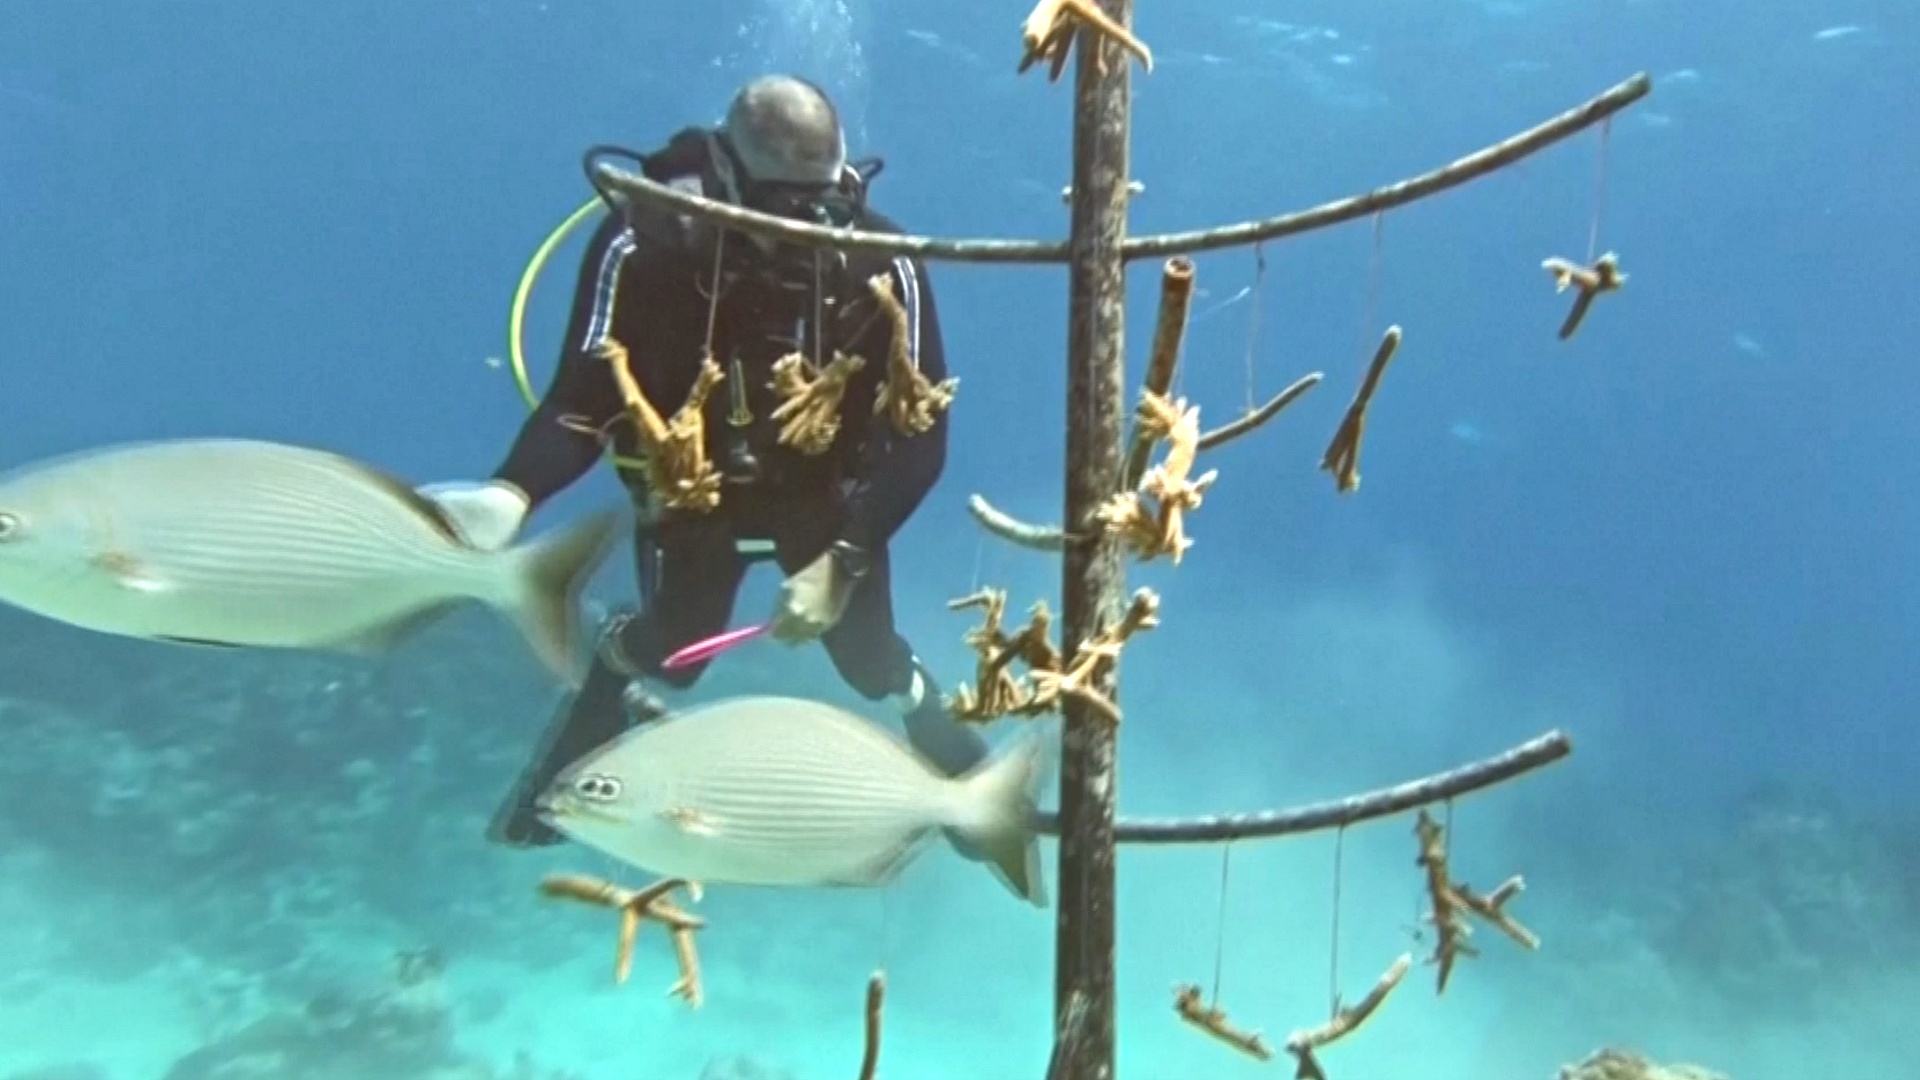 Кубинские дайверы выращивают кораллы, чтобы спасти рифы